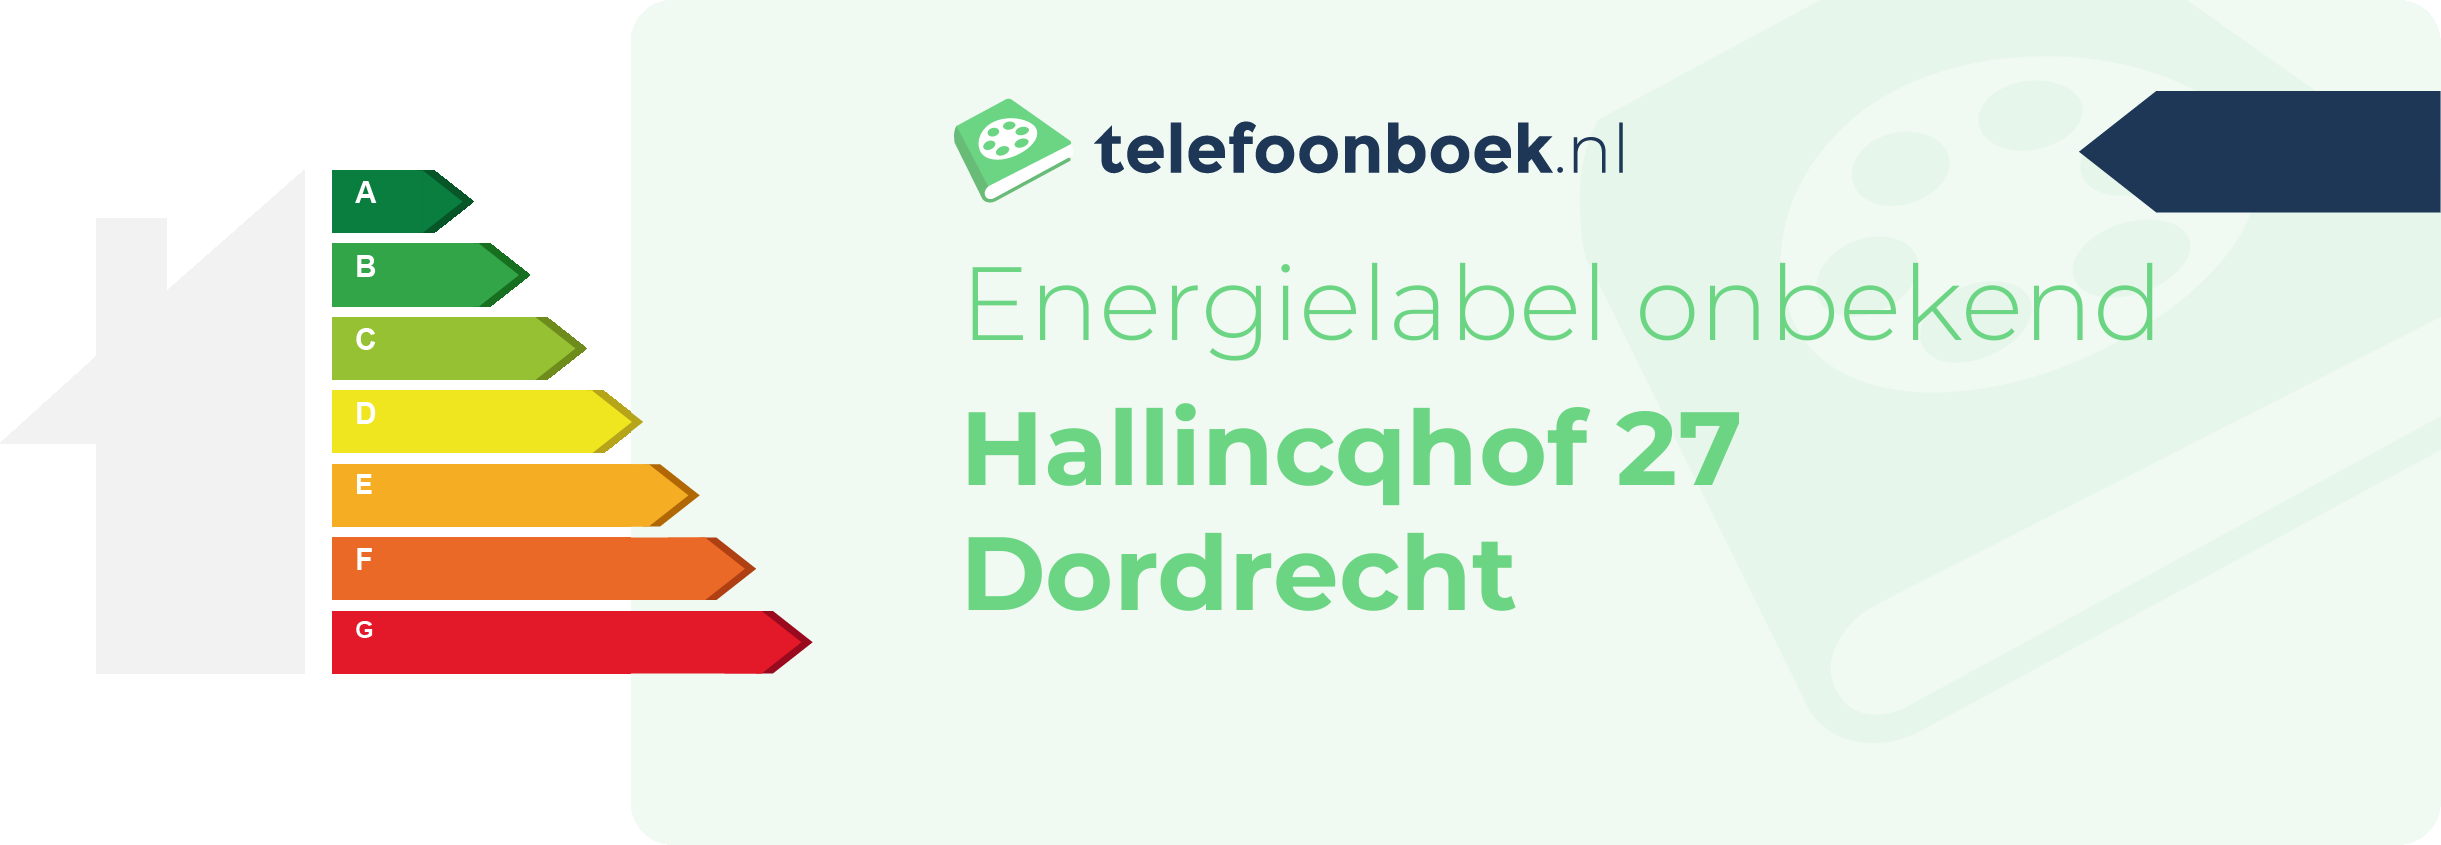 Energielabel Hallincqhof 27 Dordrecht